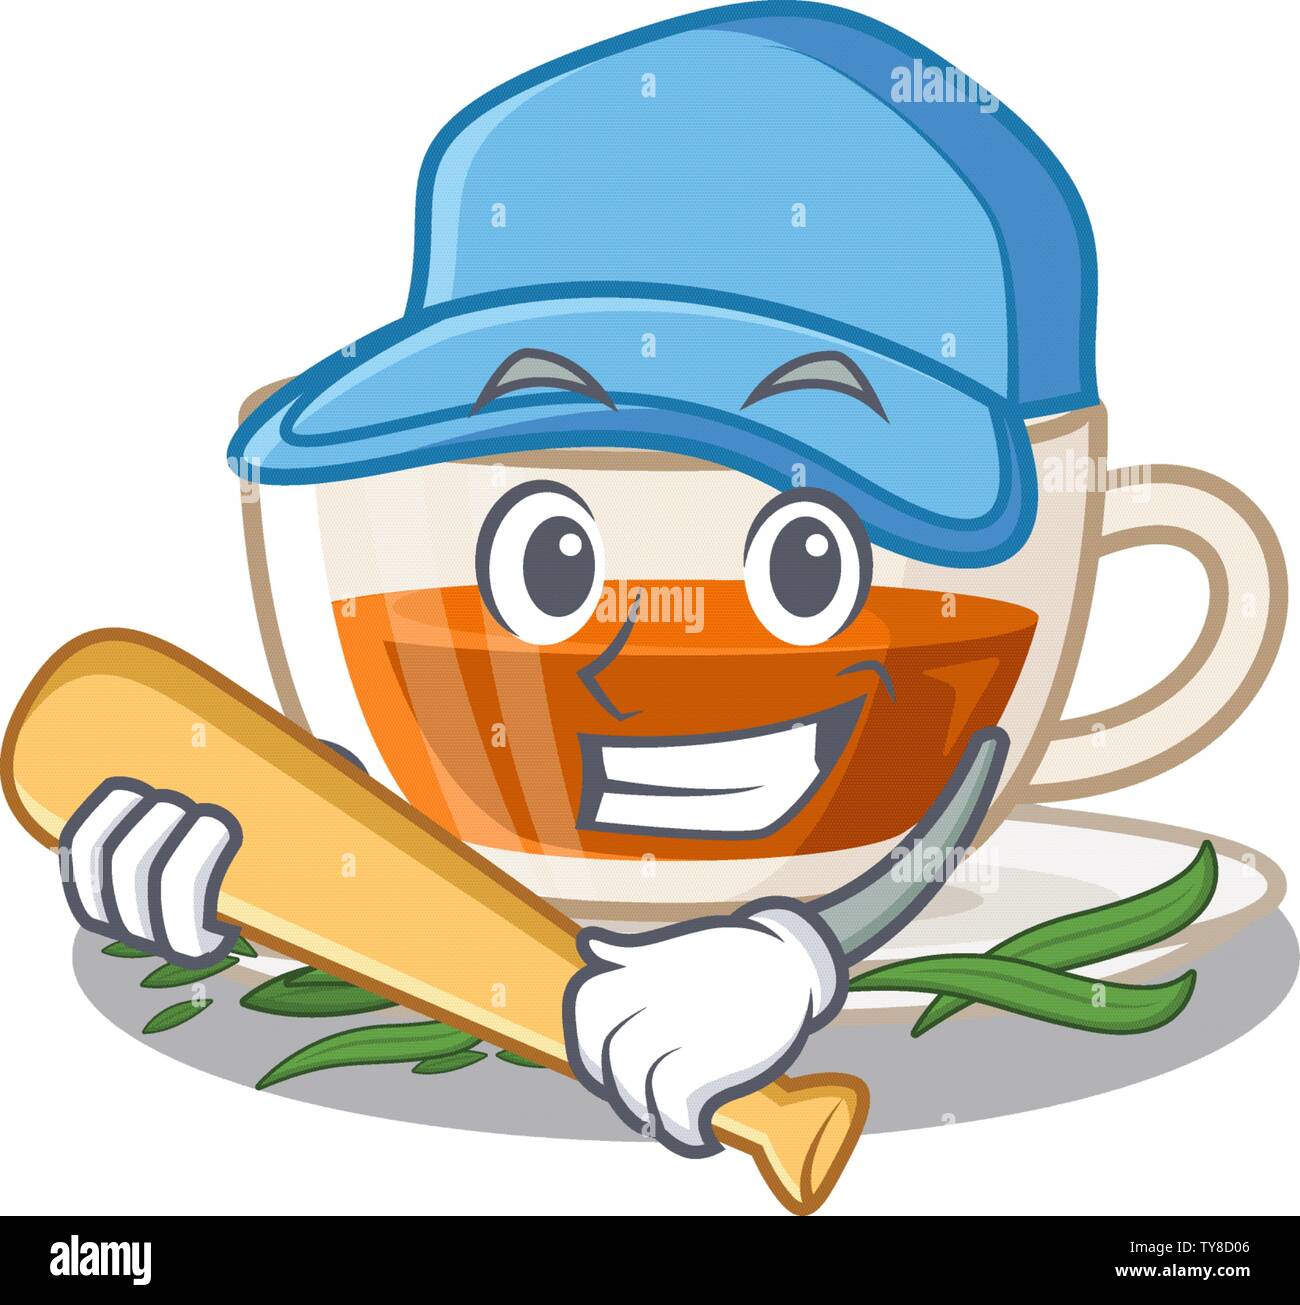 Playing baseball darjeeling tea isolated in the cartoon Stock Vector